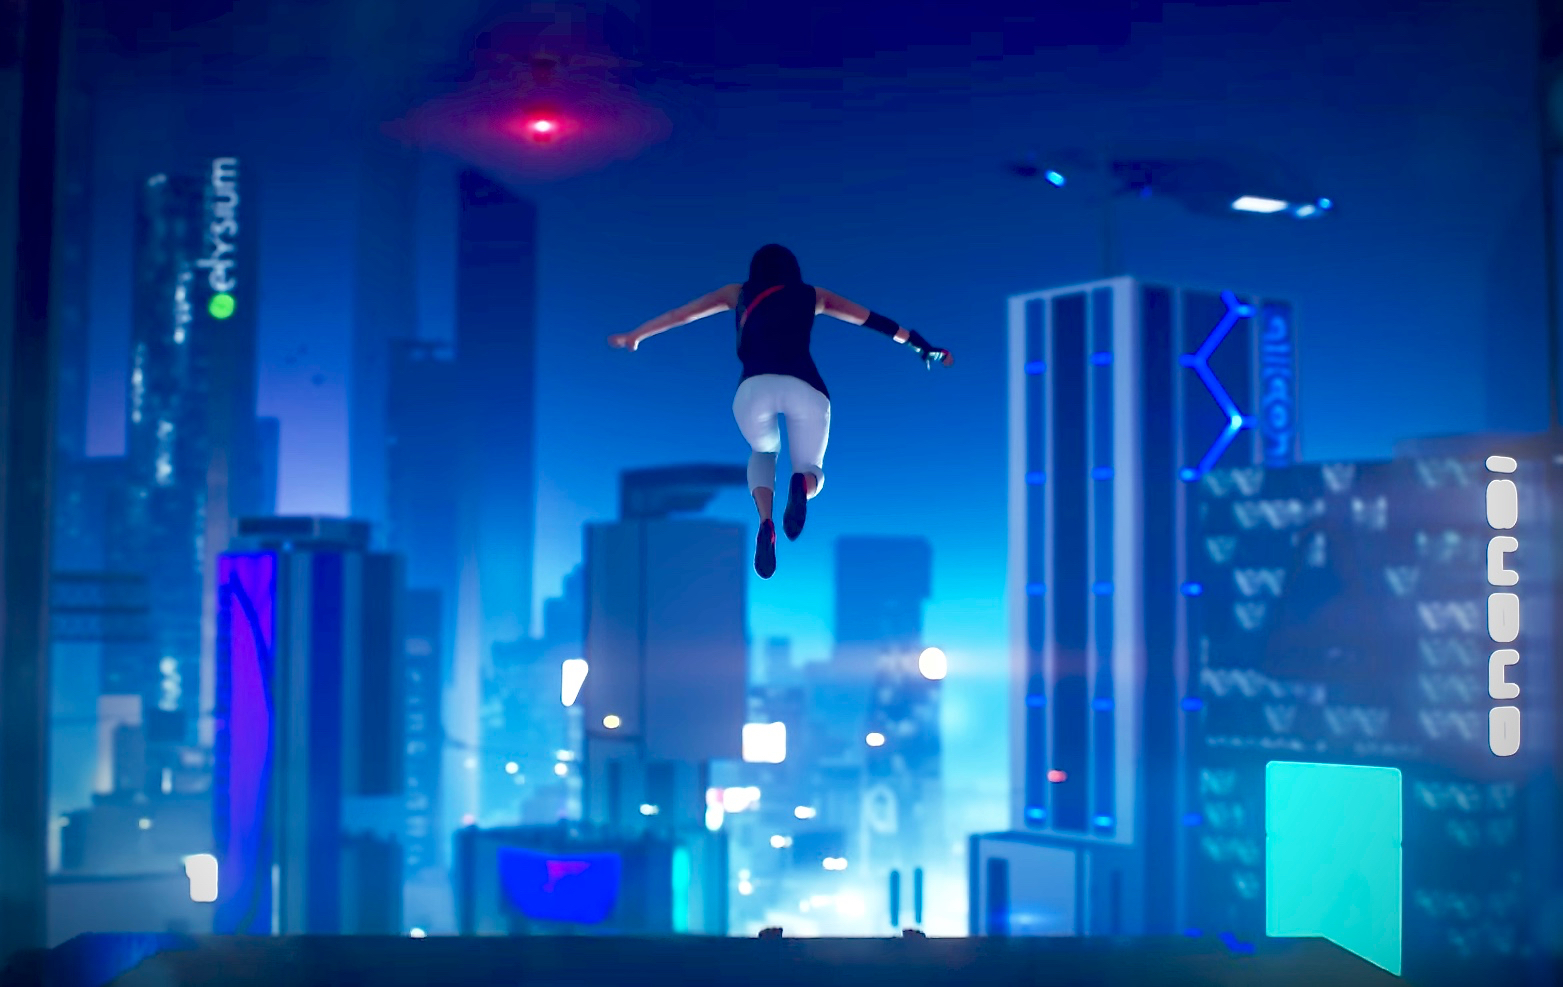 Mirror's Edge Catalyst  Launch Trailer – Why We Run – Source Sound VR